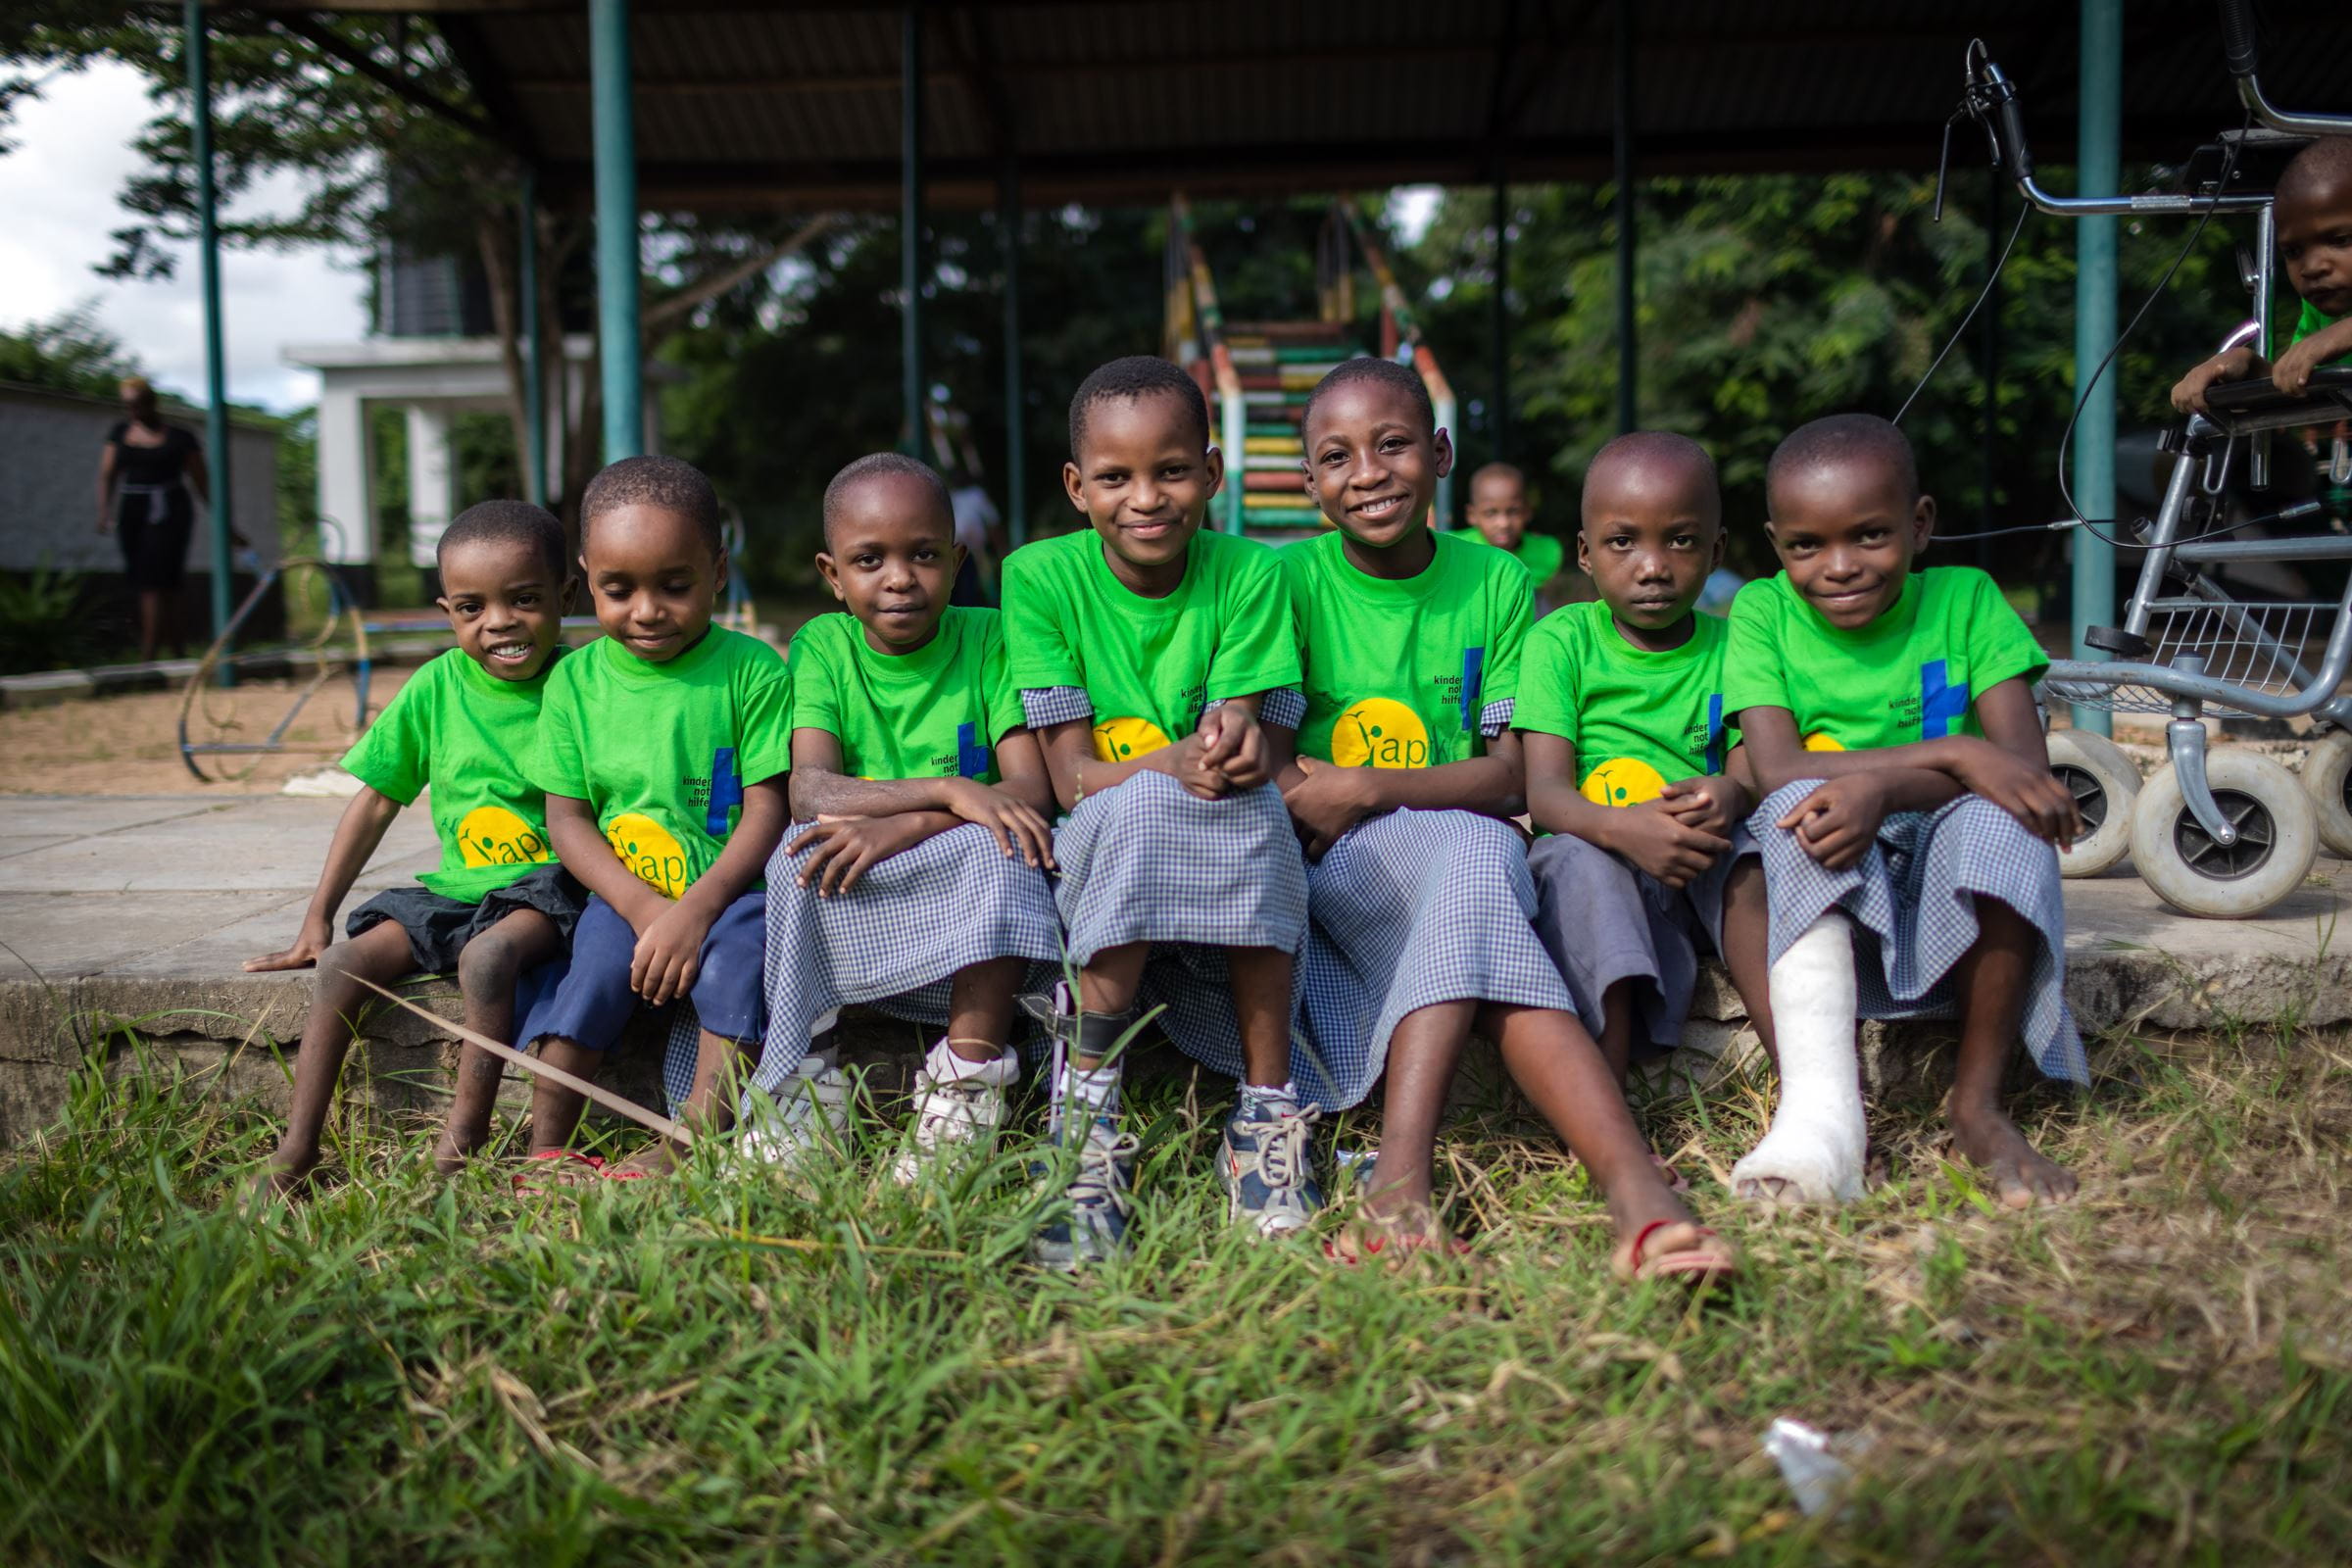 Kinder aus Kenia tragen knallgrüne T-Shirts, sitzen in einer Reihe und lachen in die Kamera.  (Quelle: Lars Heidrich)